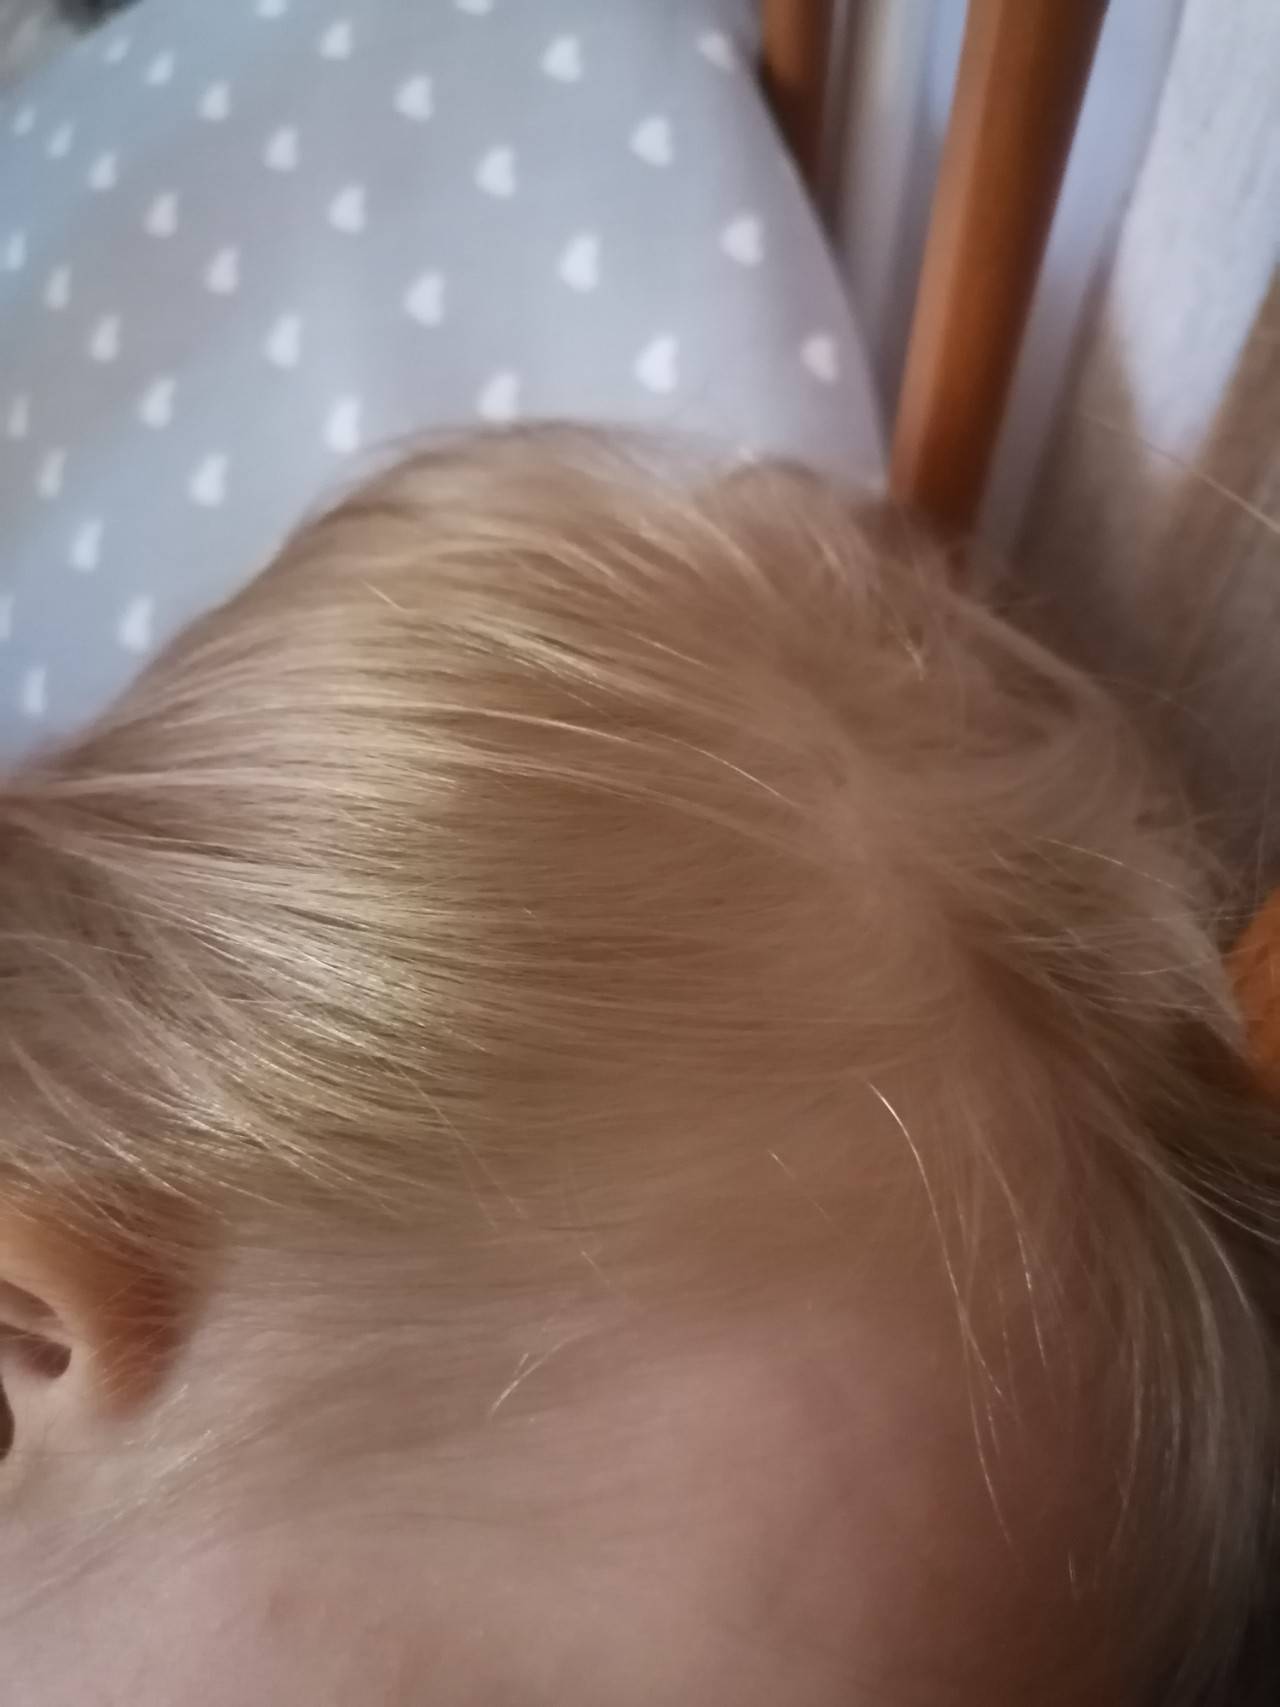 Медленно растут волосы у ребенка: причины и что делать?